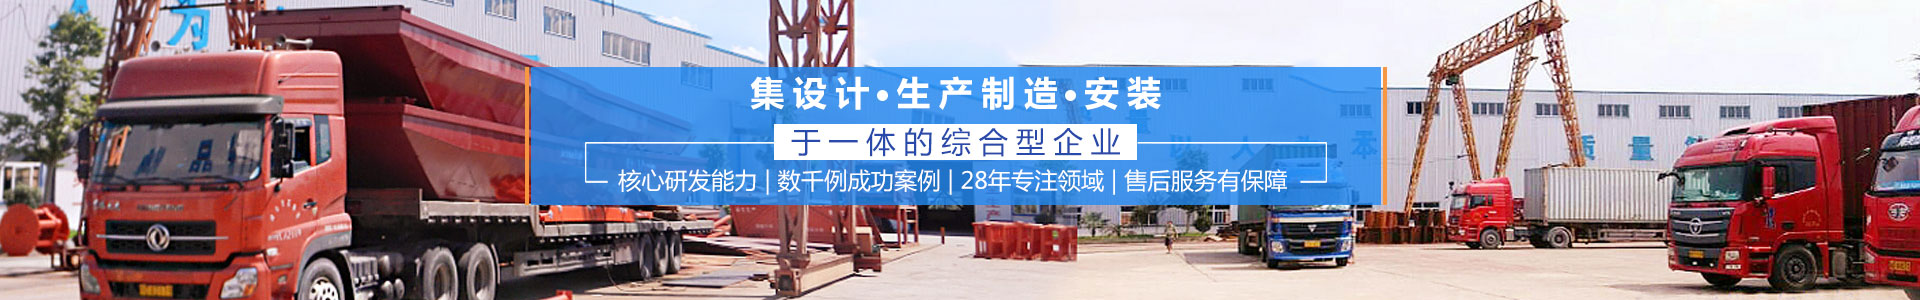 瀏陽匯鑫工貿有限公司——淘金設備廠家|沙金設備定制|淘金船設備|鉆石開采設備